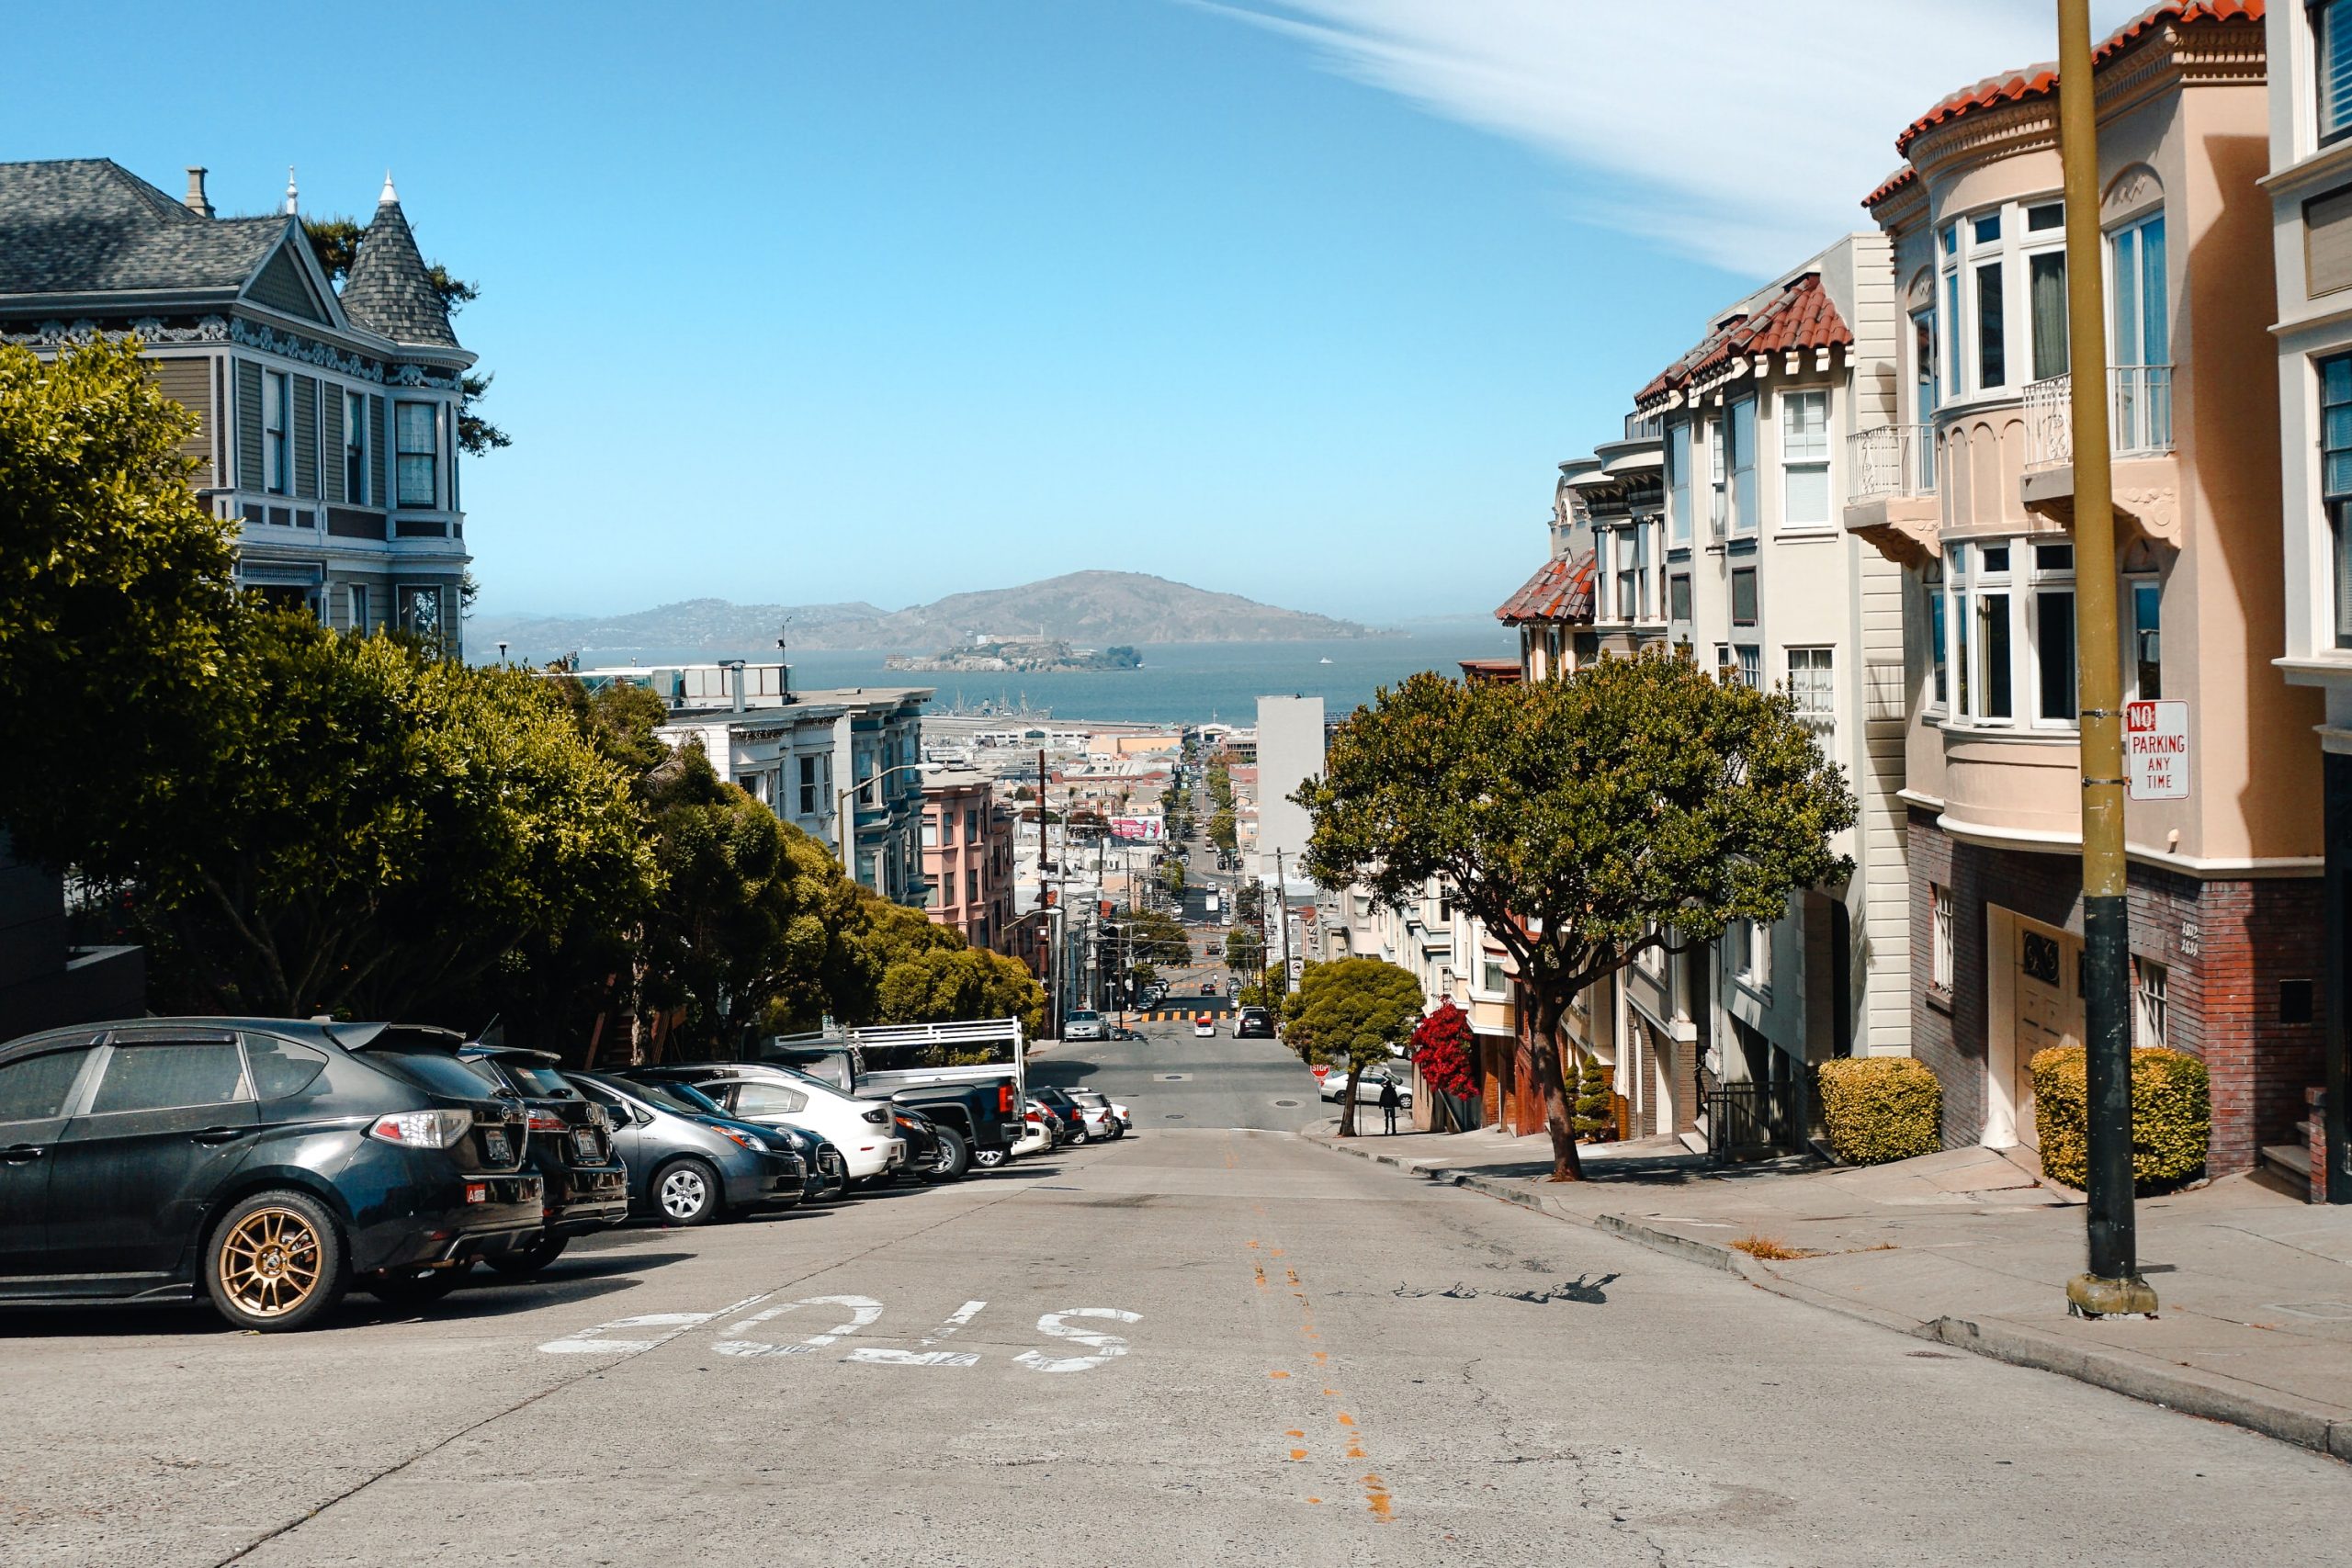 Nob Hills San Francisco with incredible views